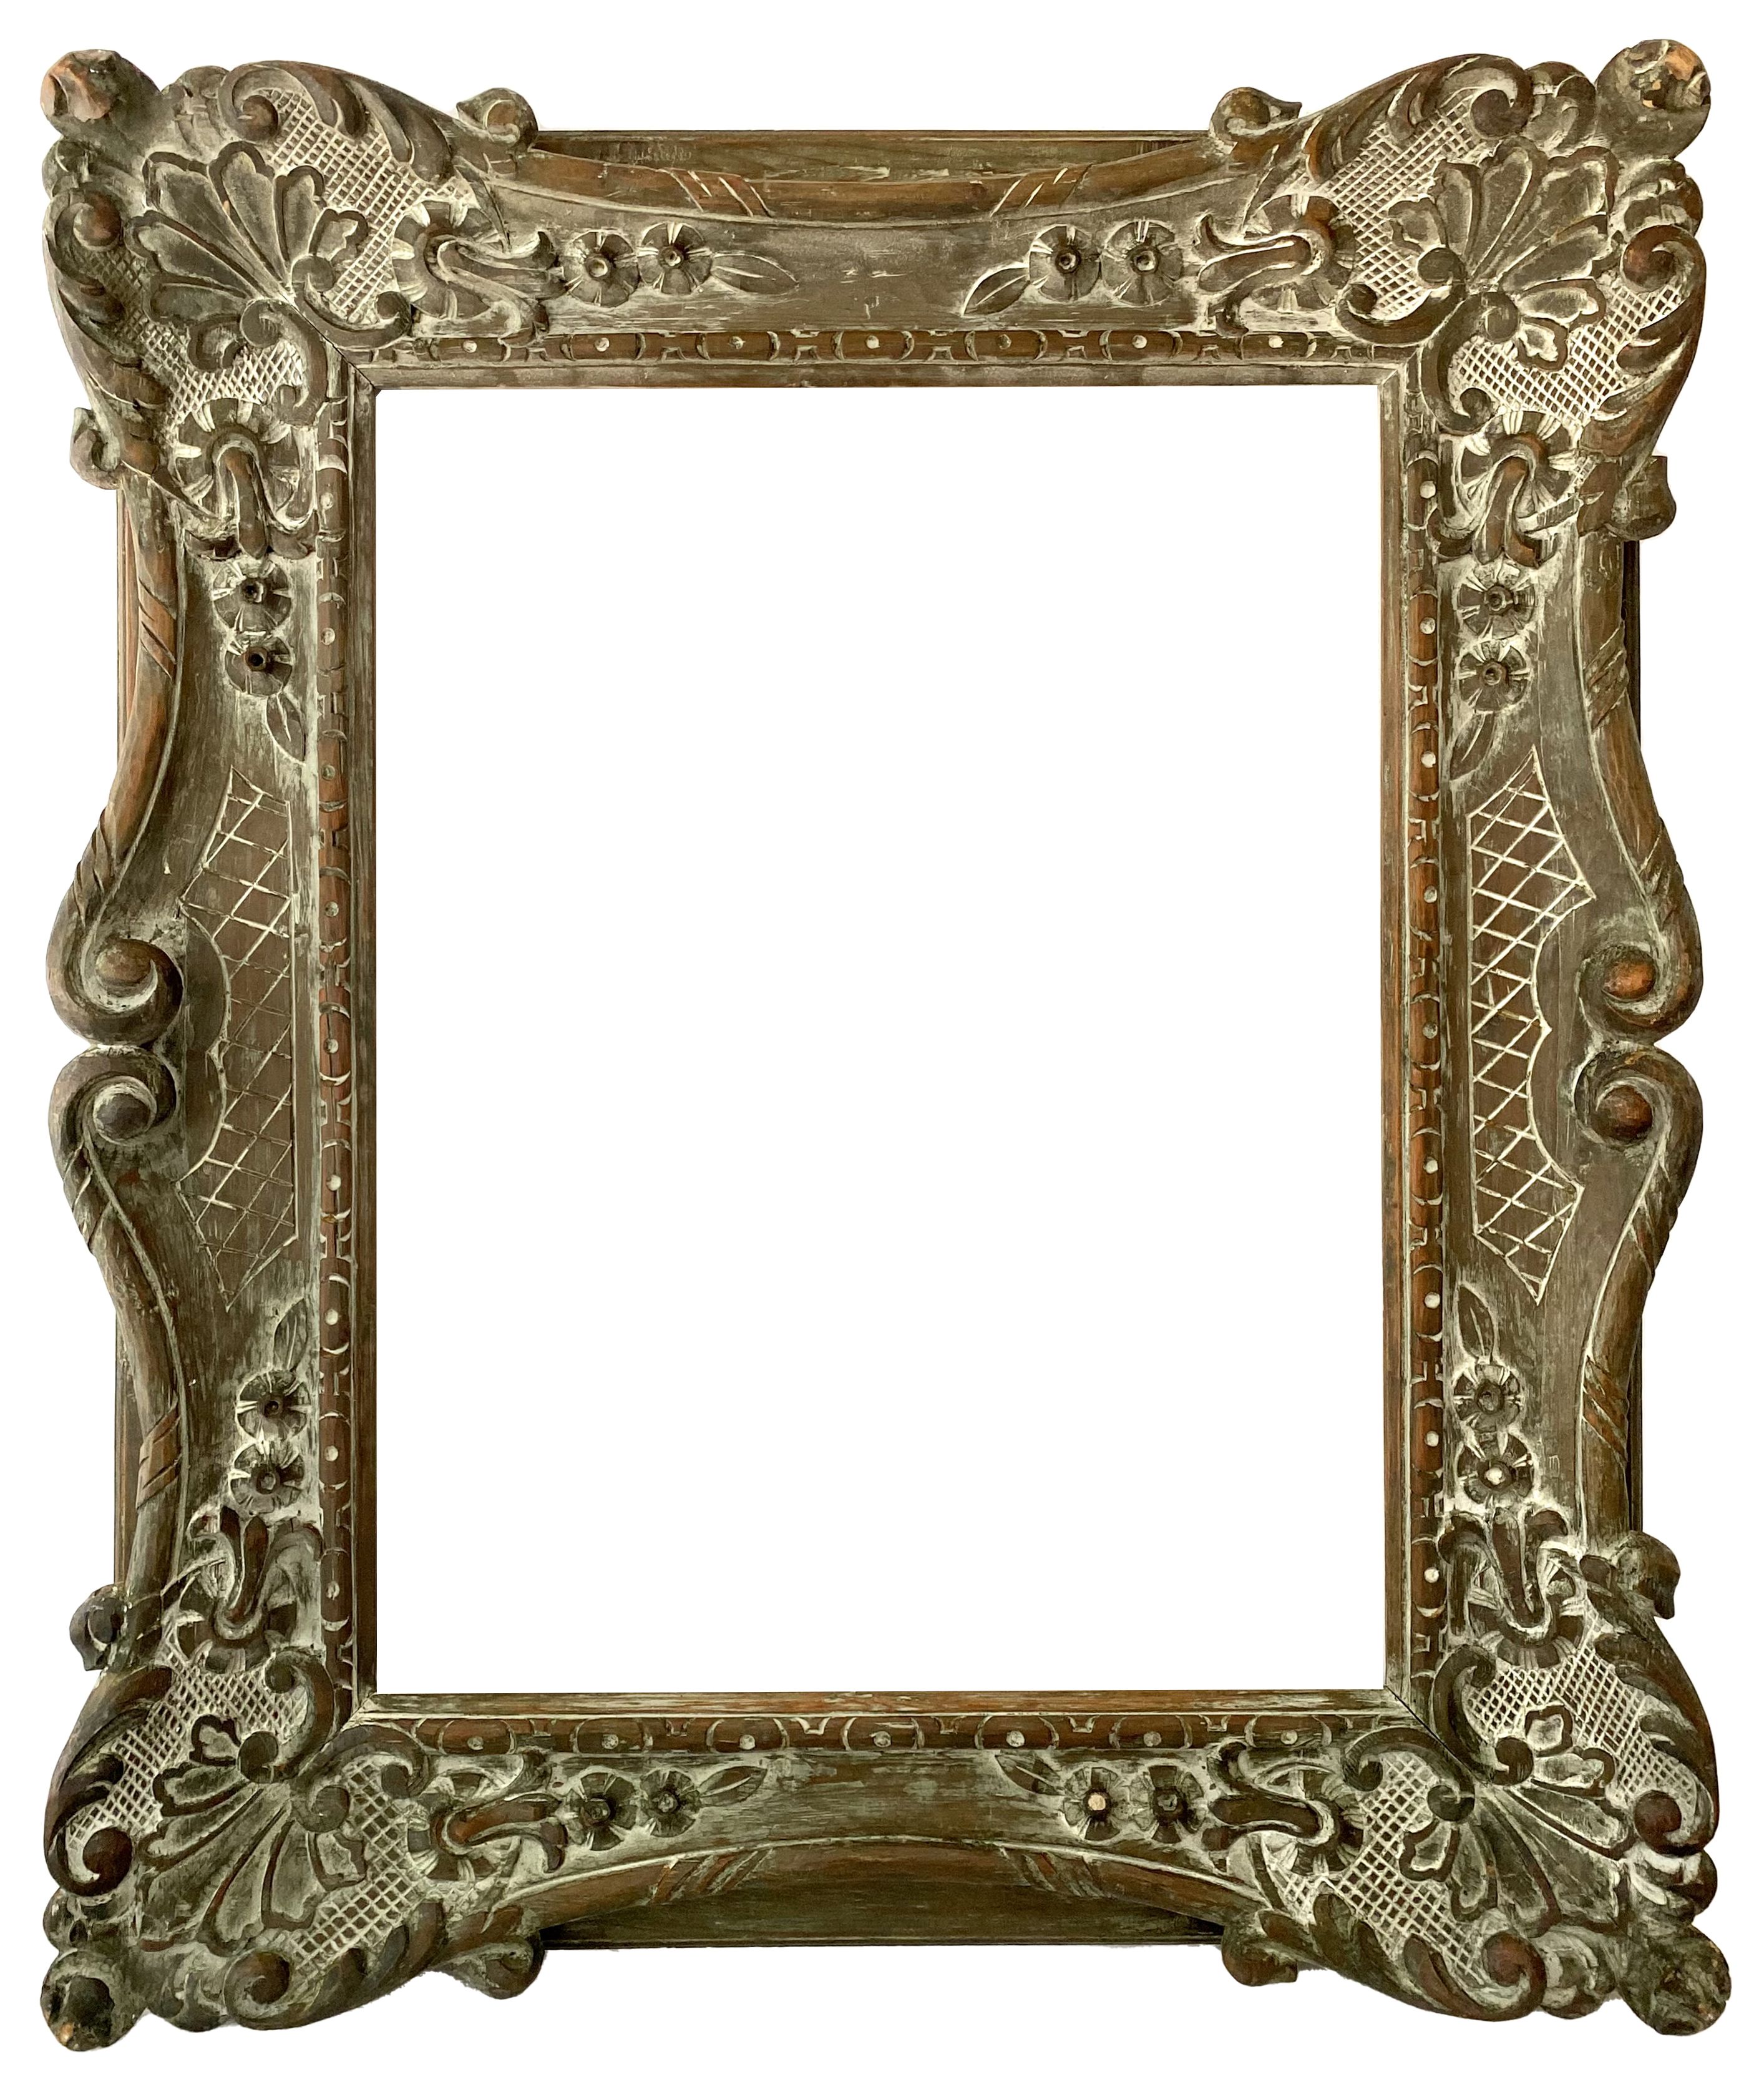 Cadre de style Louis XIV - 84,00 x 66,00 - REF - 1523